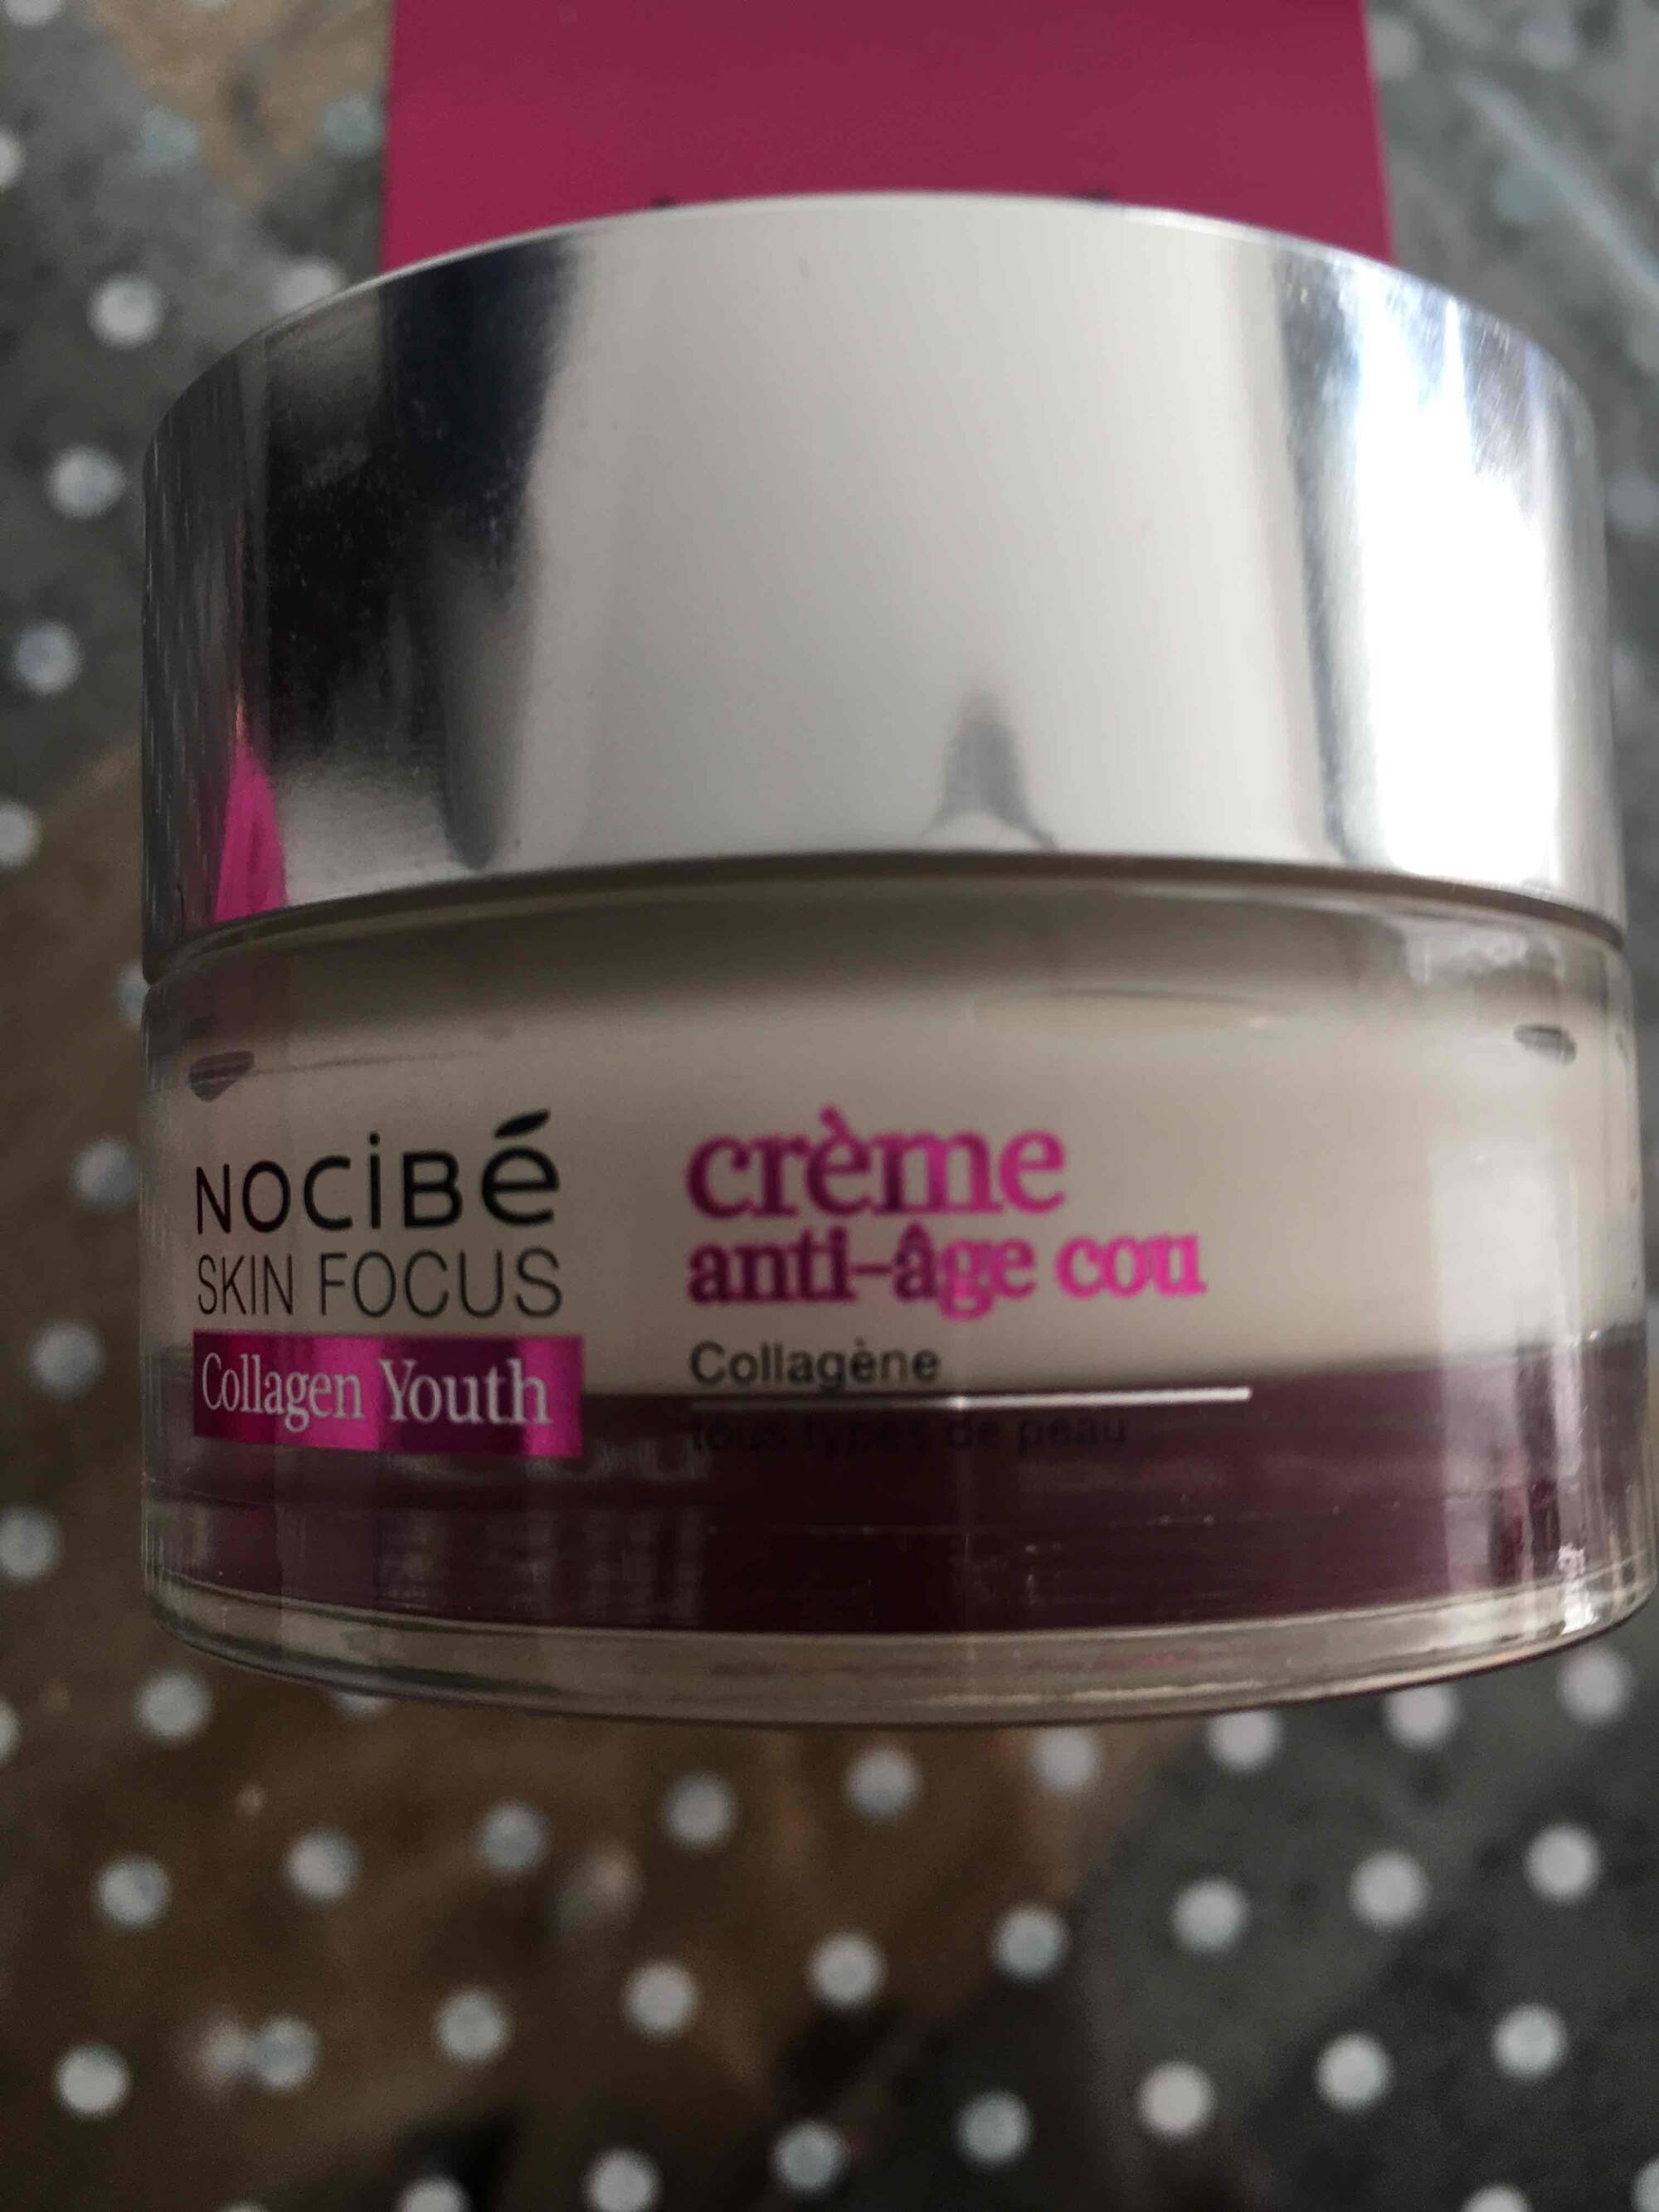 NOCIBÉ - Skin focus collagen youth - Crème anti-âge cou